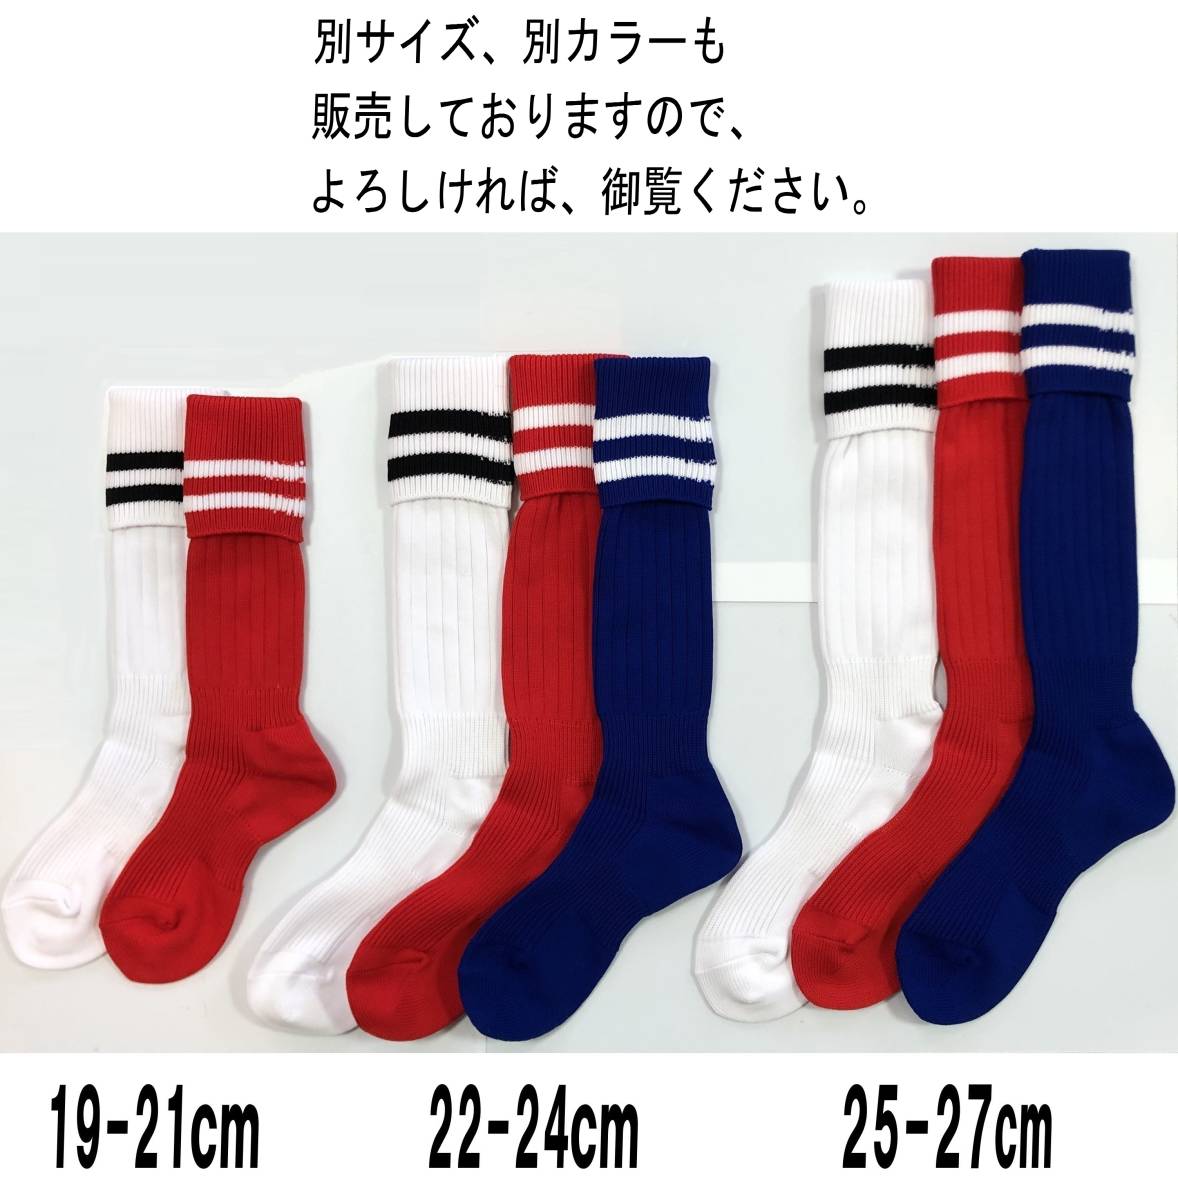 【送料込】日本製 サッカーソックス 22-24cm 2足1セット ホワイト ブラック_カラーブルー欠品しております。